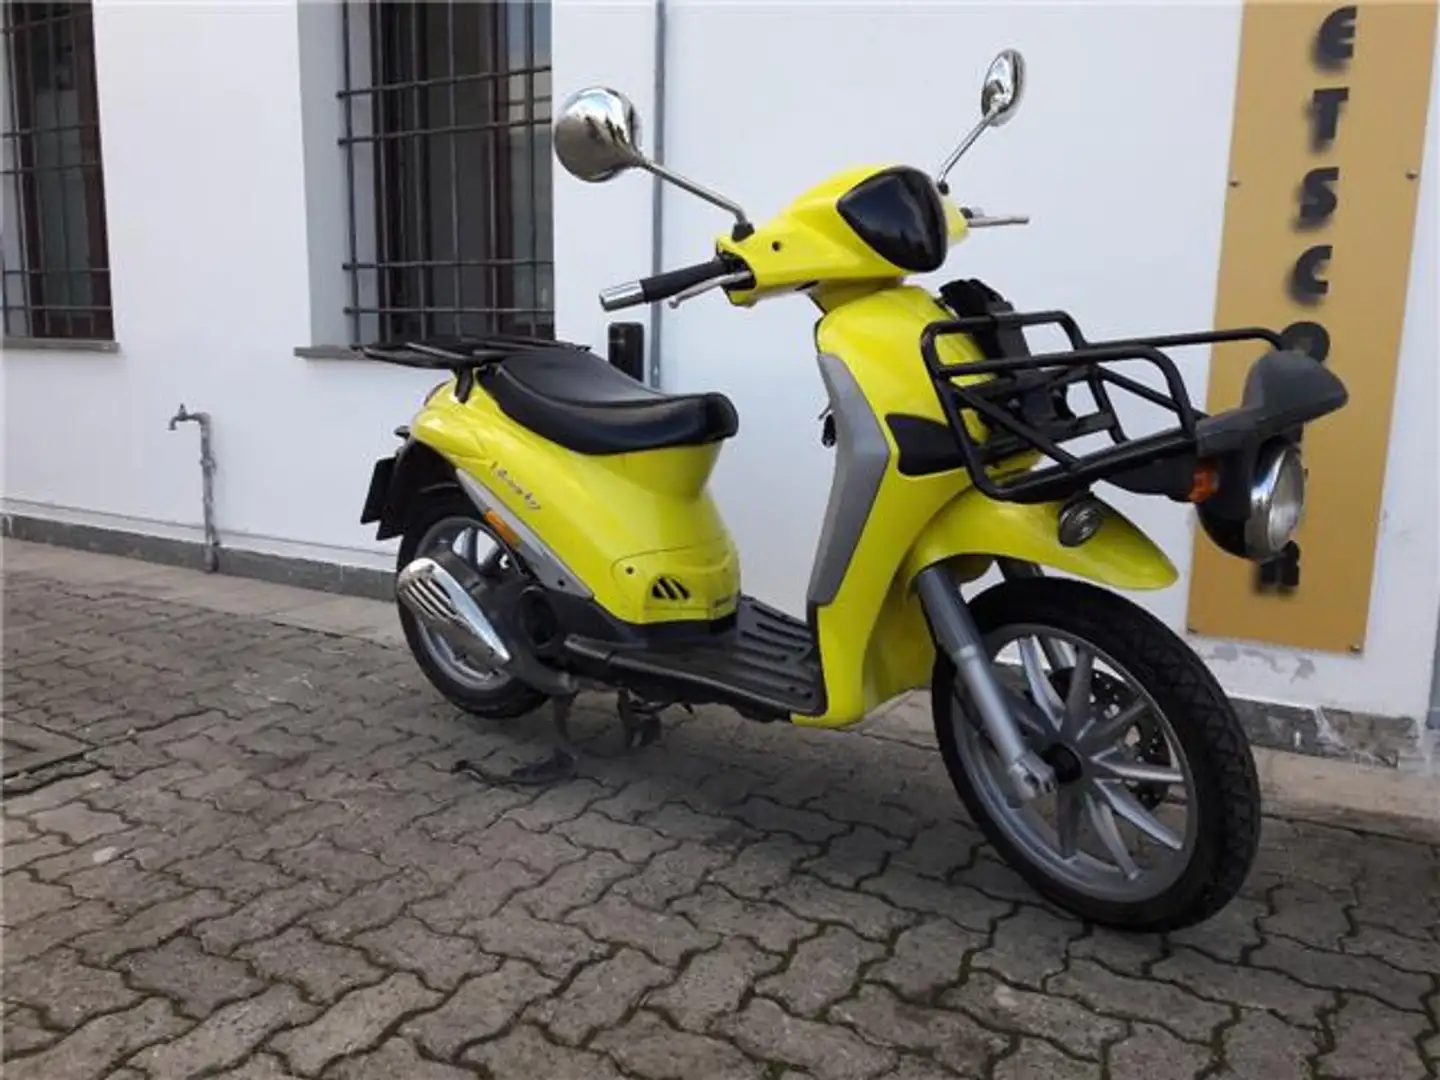 usato Piaggio Liberty 125 Scooter a Ospedaletto - Pisa per € 1.300,-